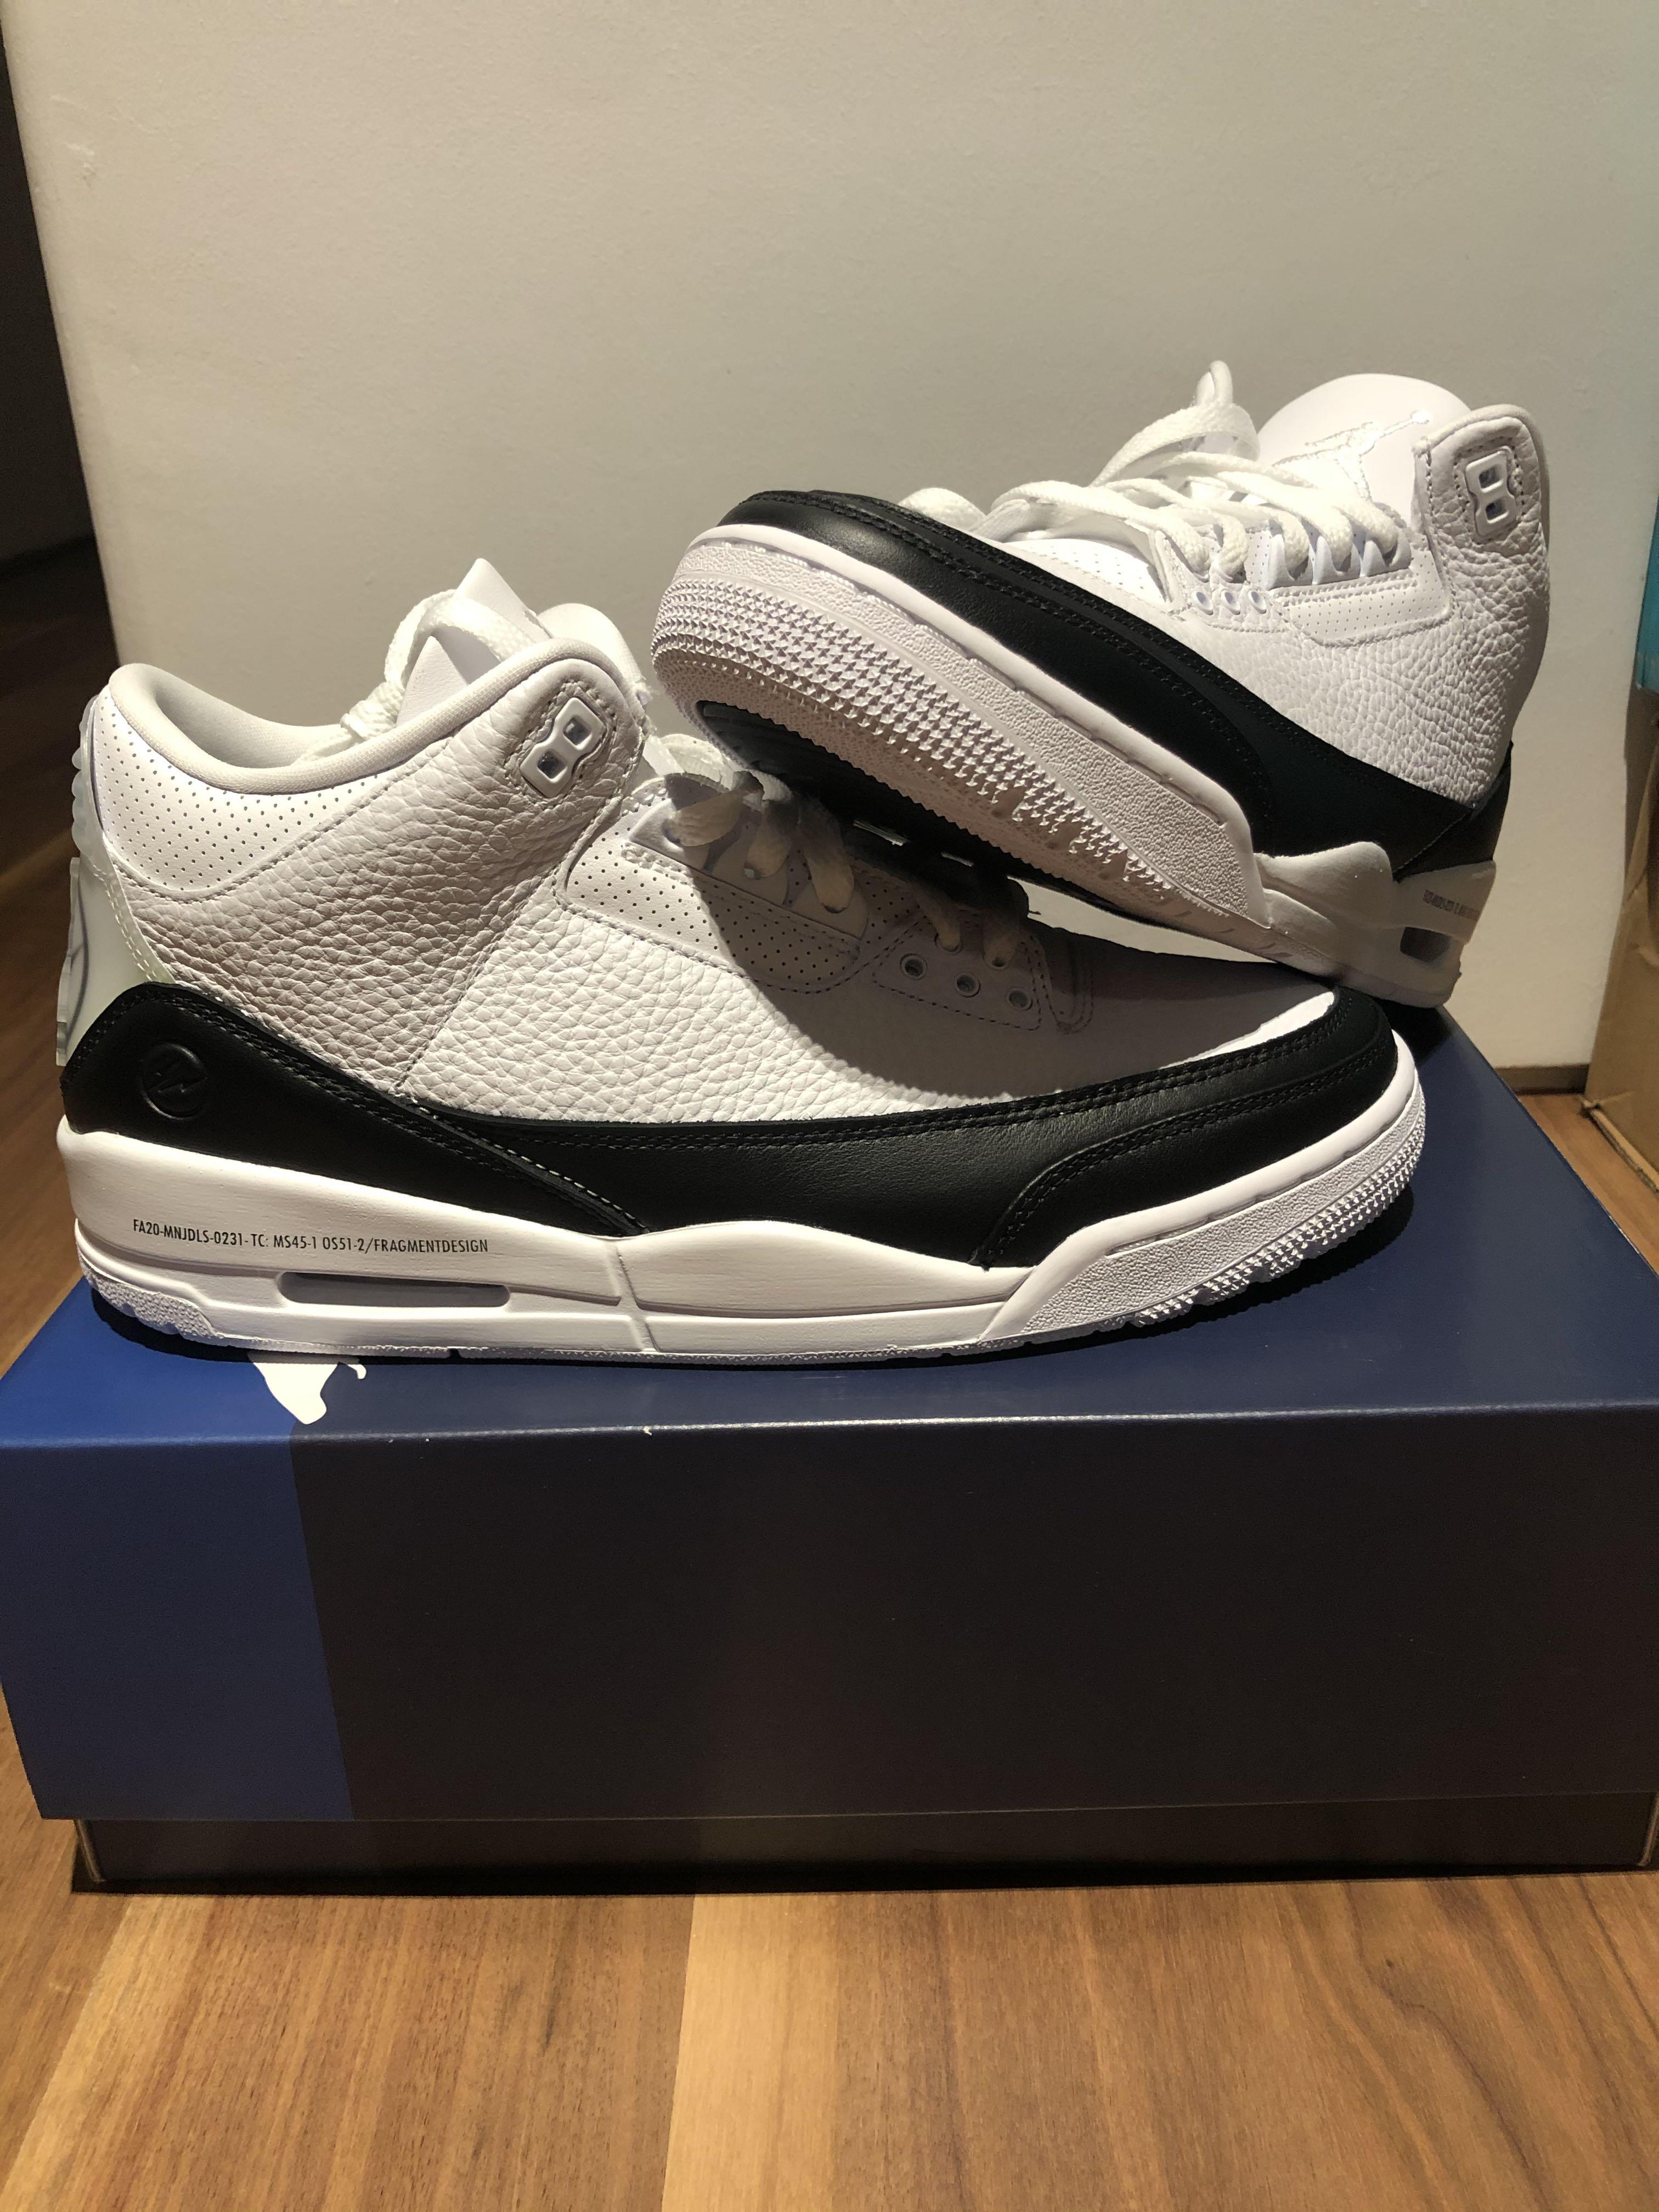 Air Jordan 3 x Fragment Design, Men's Fashion, Footwear, Sneakers 